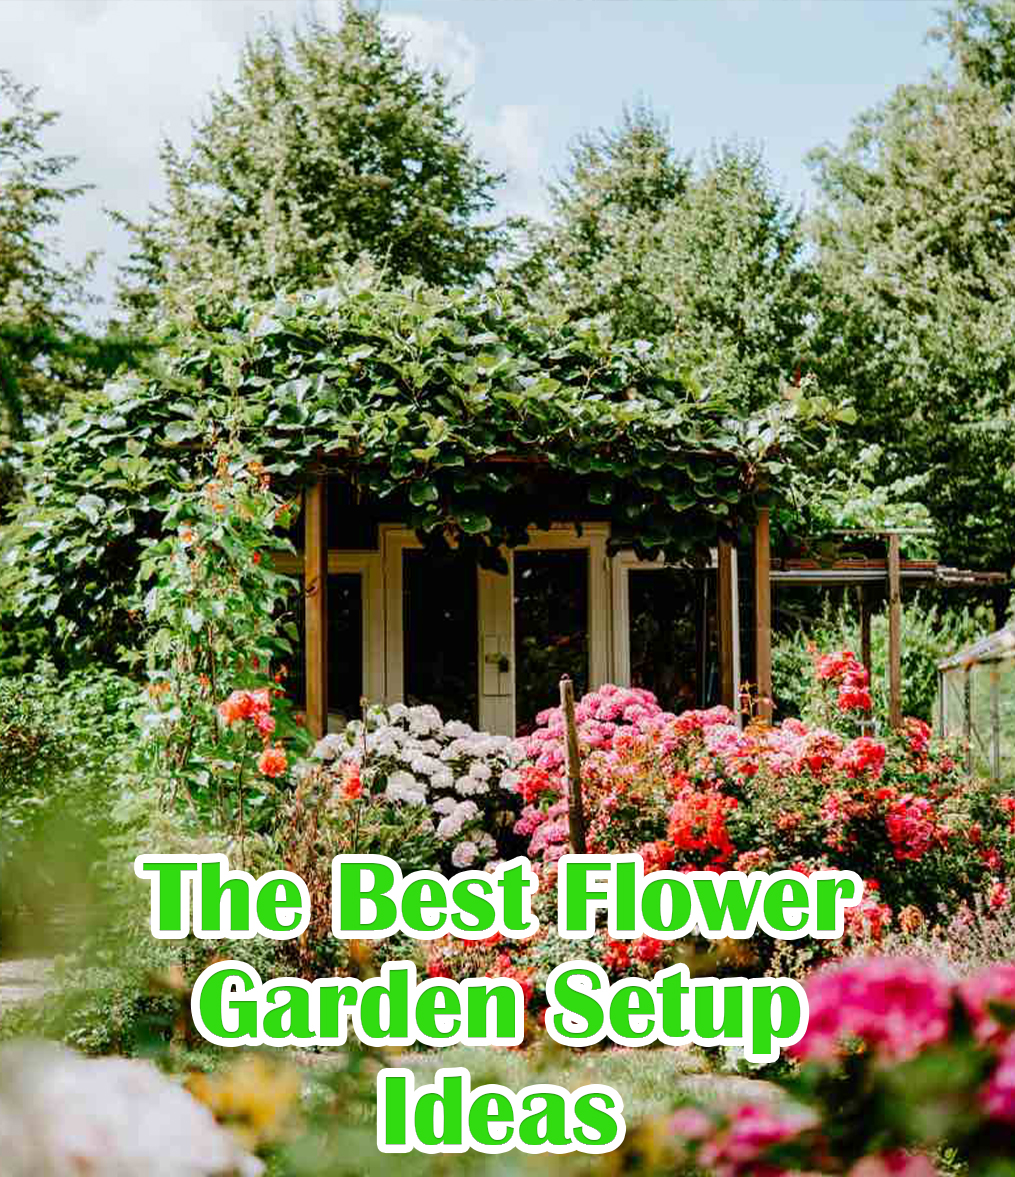 The Best Flower Garden Setup Ideas